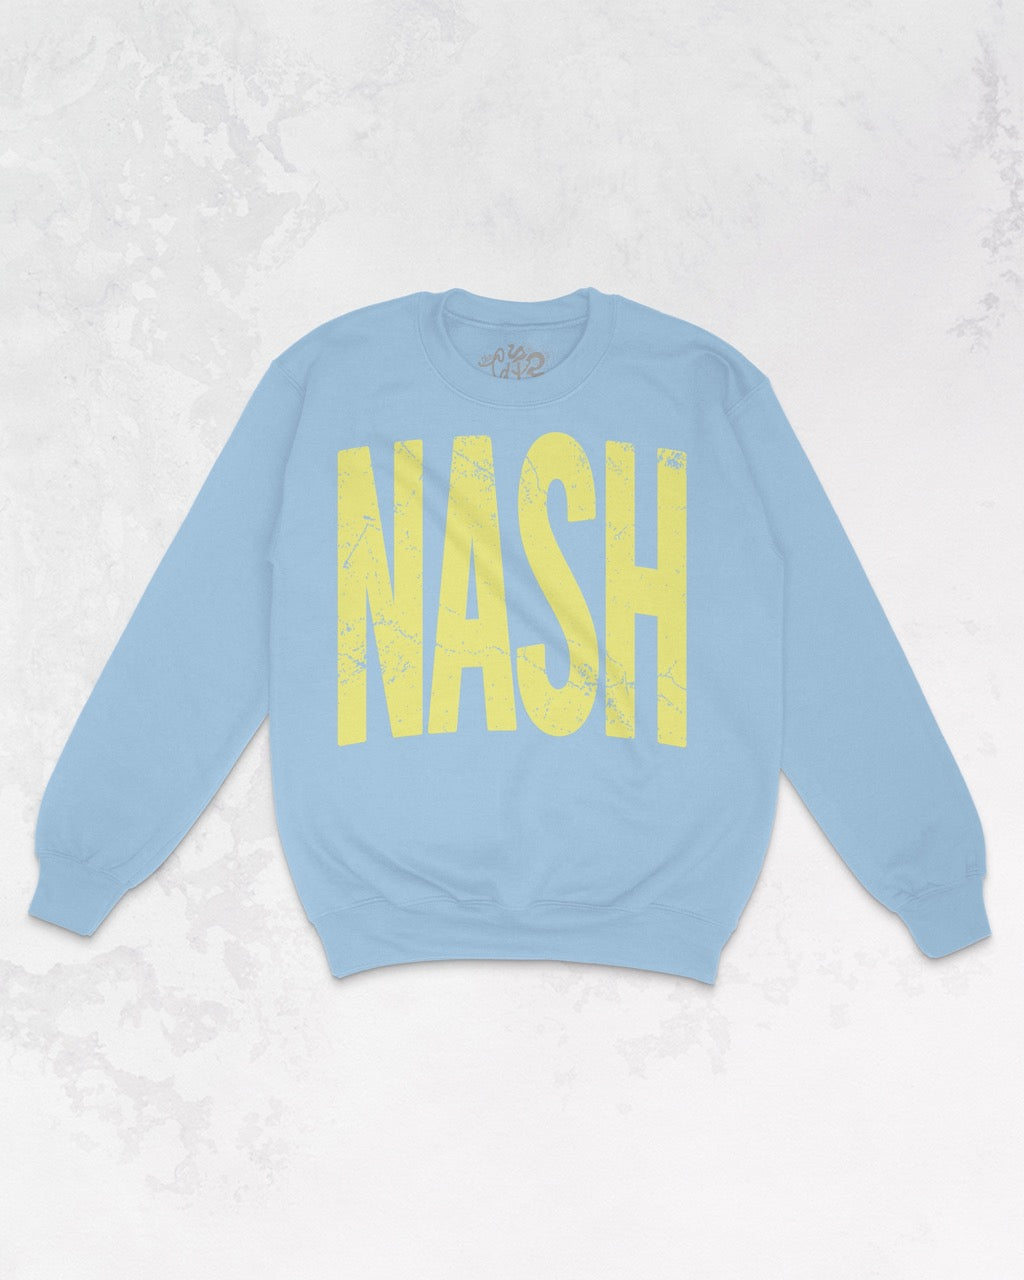 Underground Original Design: NASH | Nashville, Tennessee Oversized 90's Sweatshirt